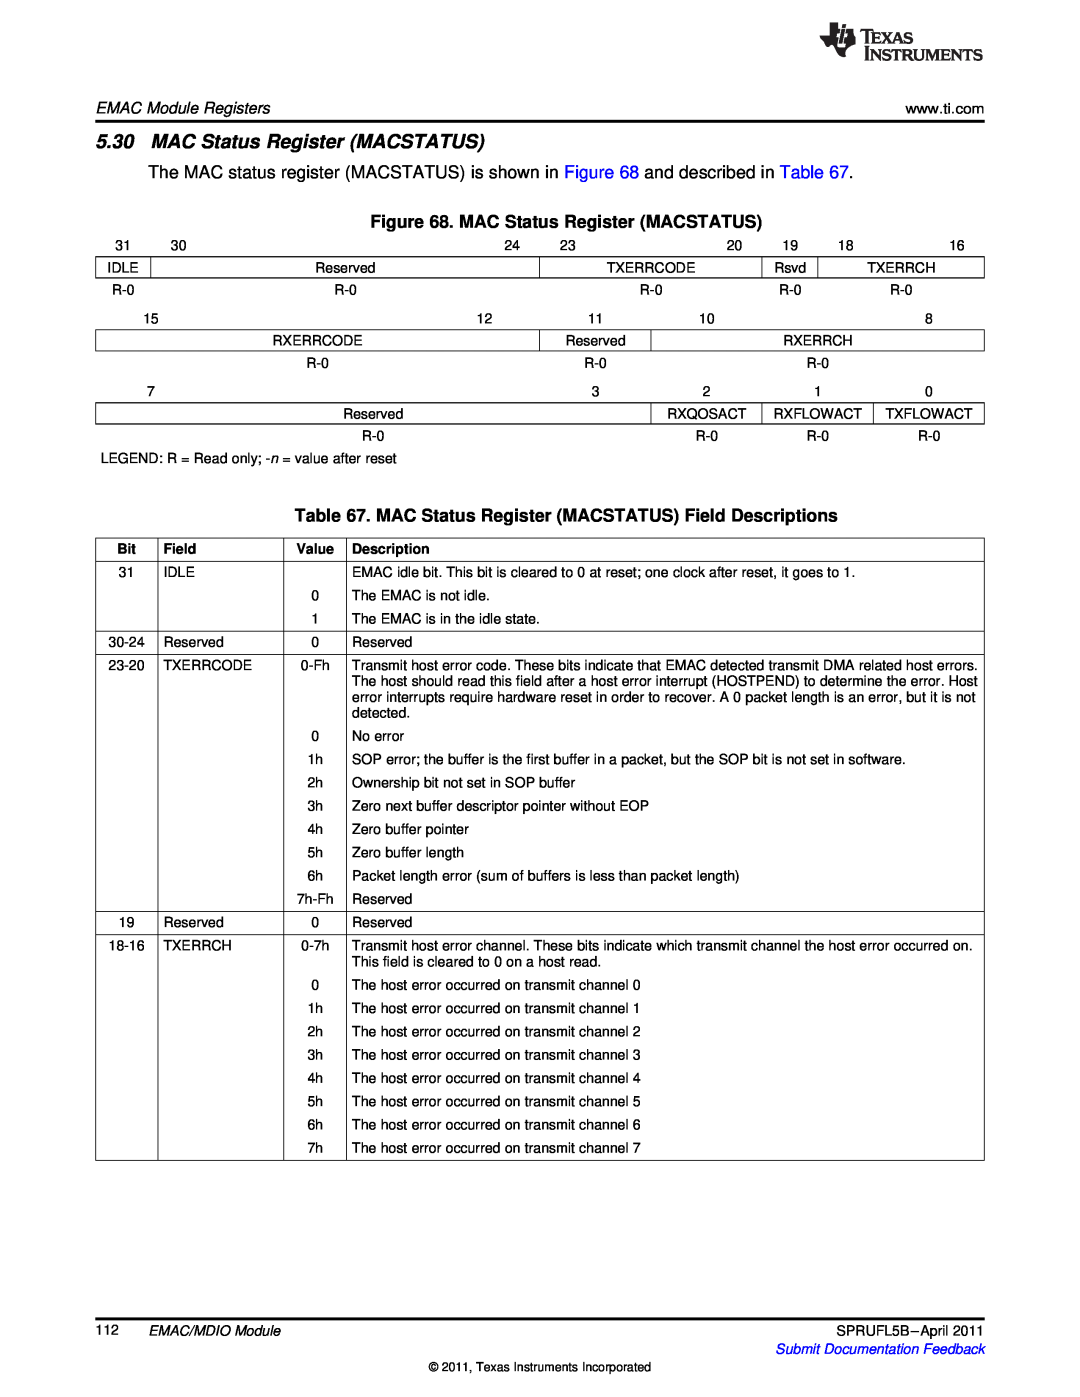 Texas Instruments TMS320C674X manual MAC Status Register MACSTATUS Field Descriptions, EMAC Module Registers, Value 